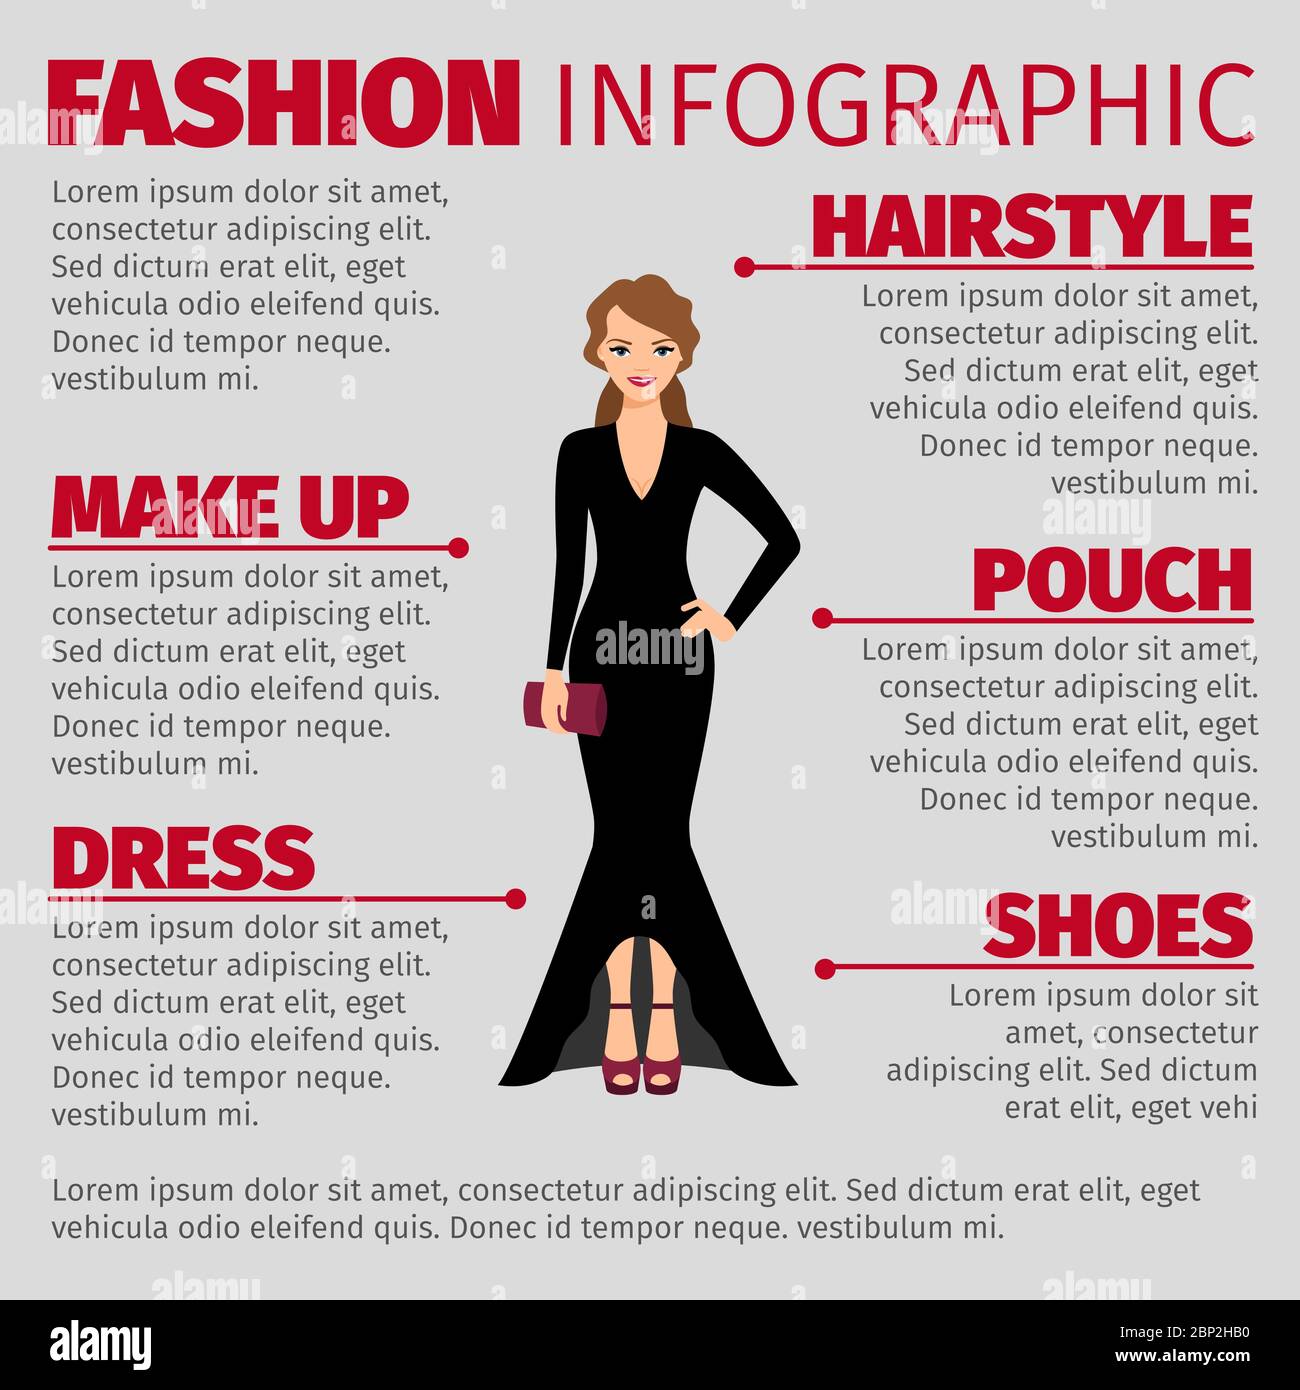 Mode Infografik mit Frau in einem Abendkleid. Vetor-Illustration Stock Vektor